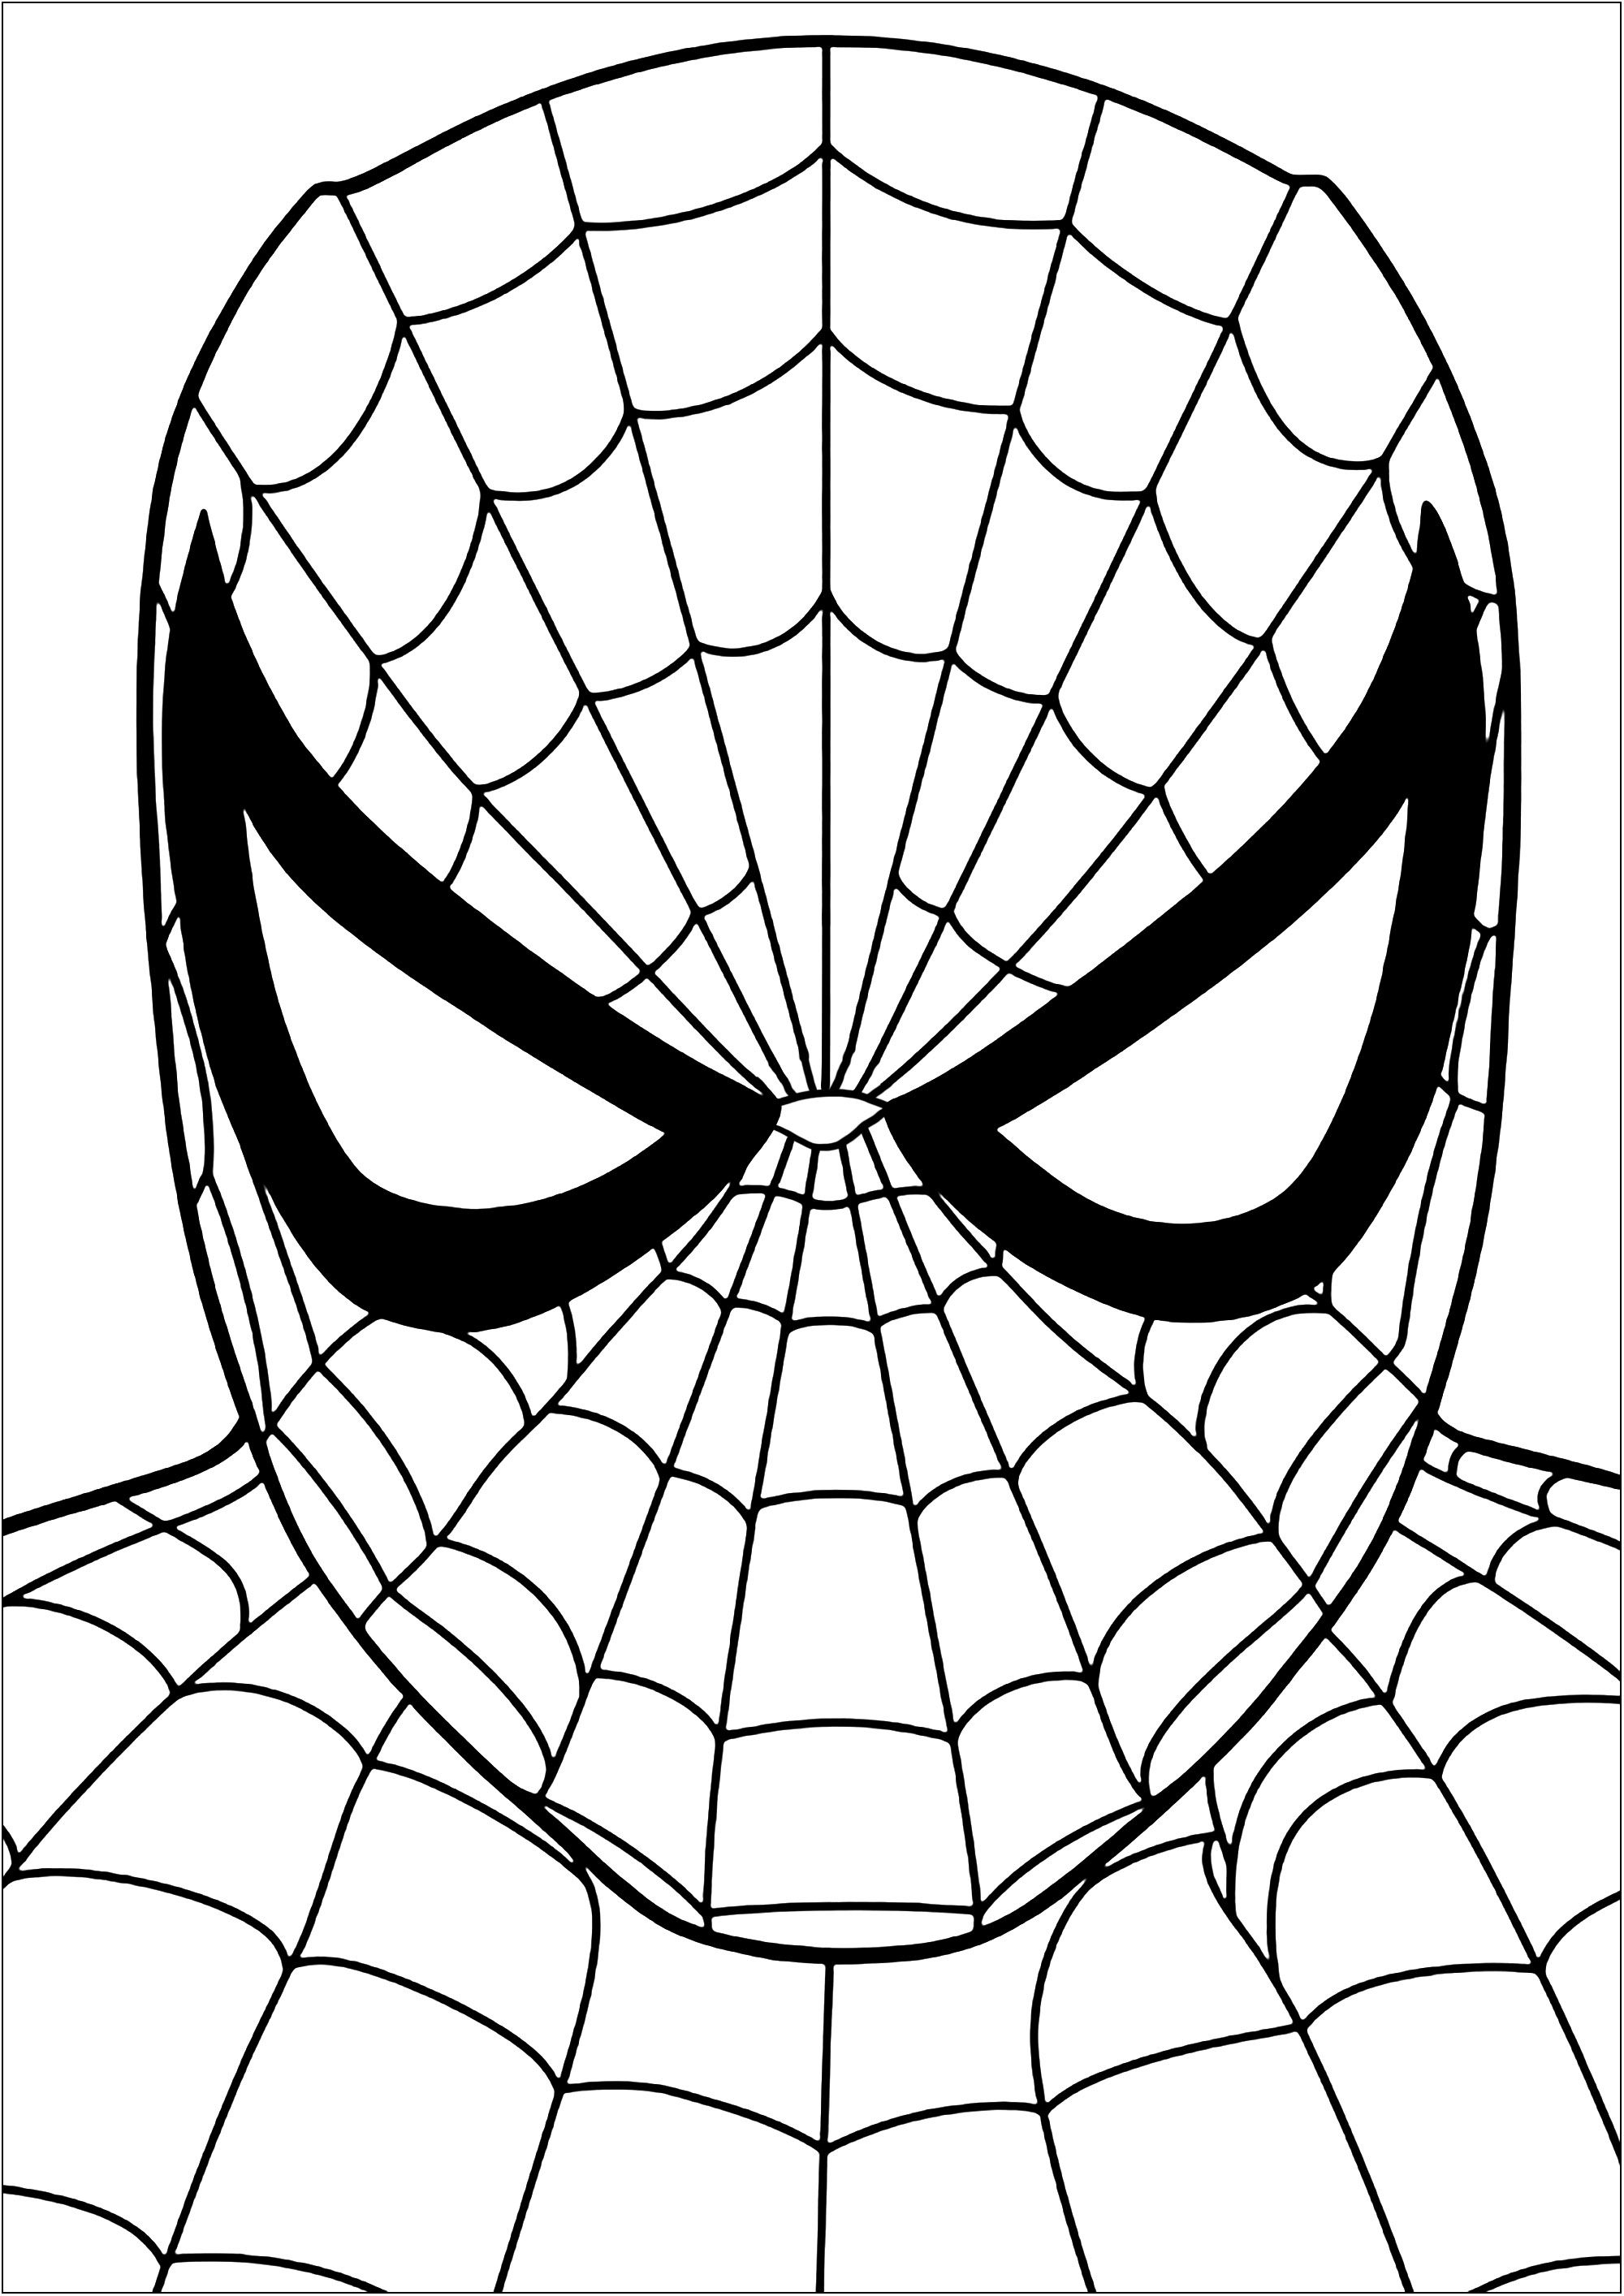 Coloriage de la tête de Spiderman. Coloriez chaque partie de ces toiles d'araignées constituant ce costume de Spiderman, alias Peter Parker